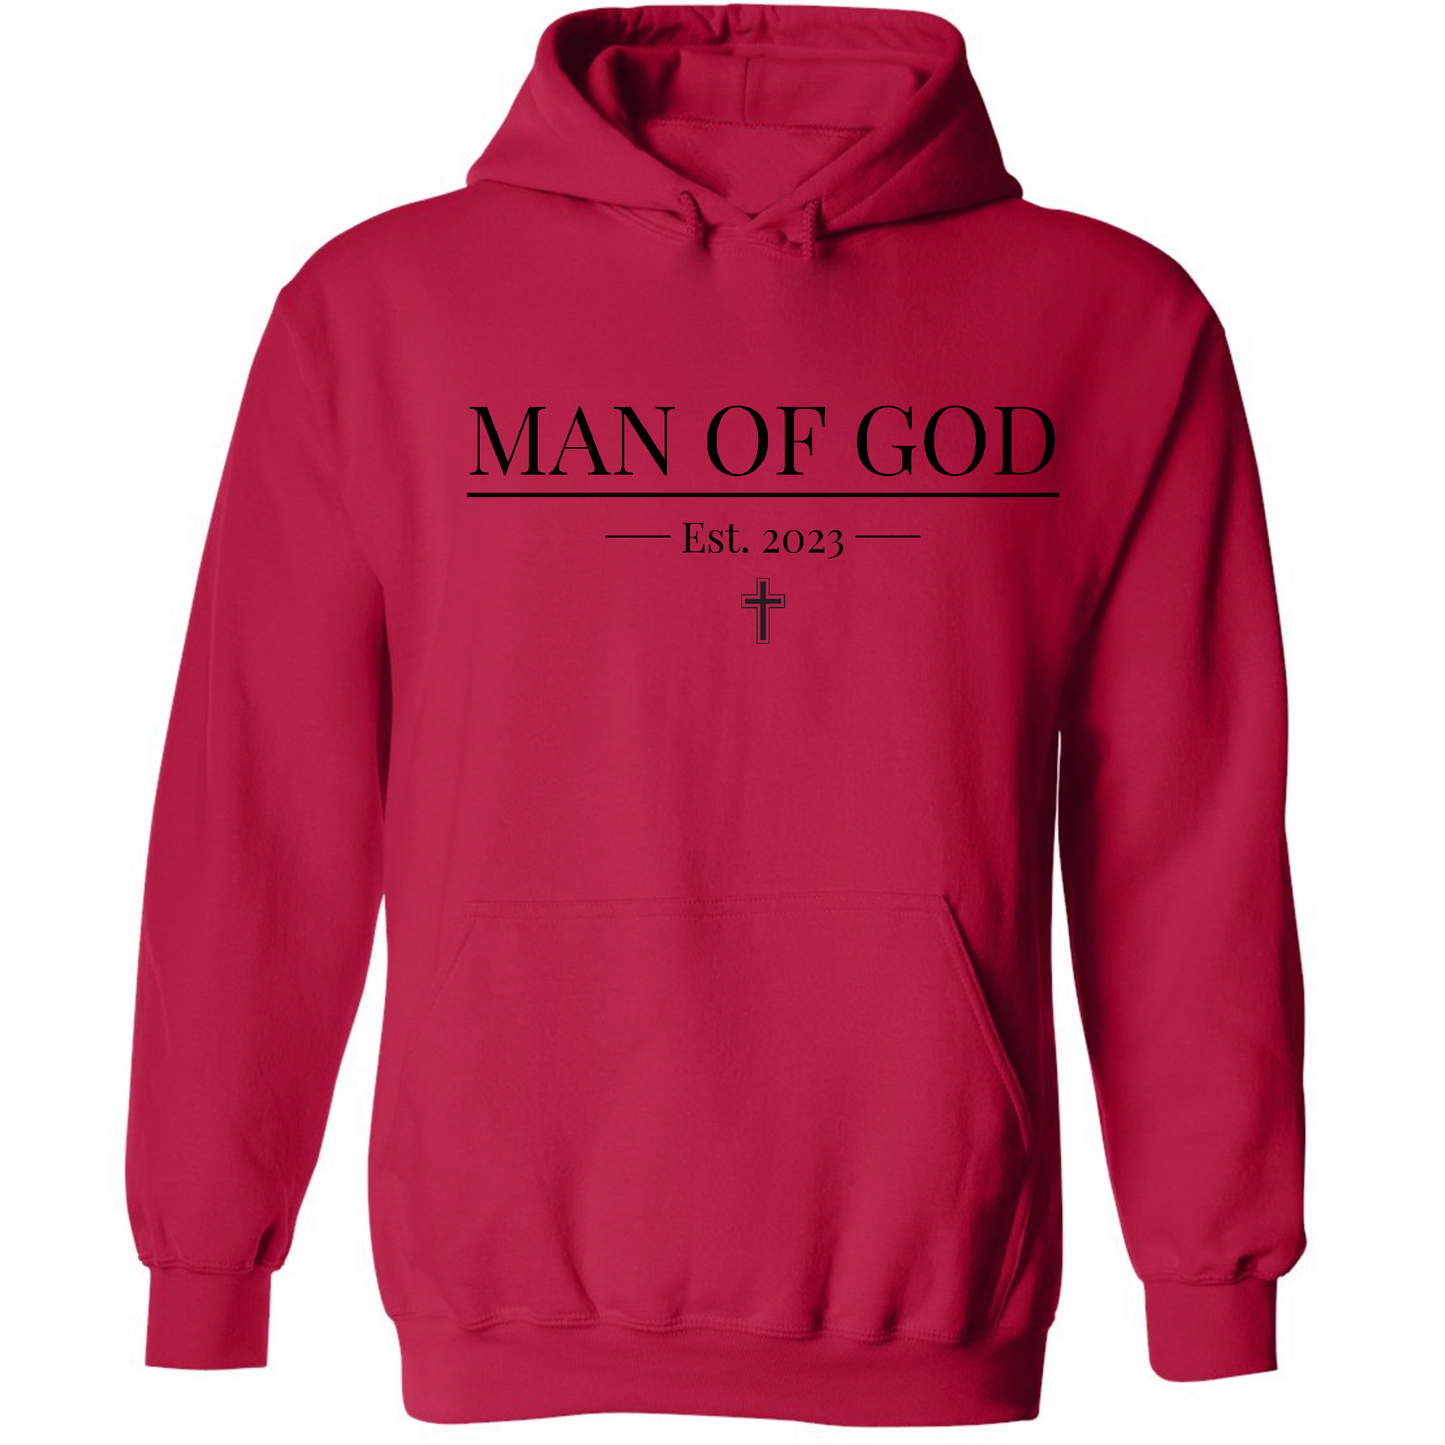 MAN OF GOD HOODIE